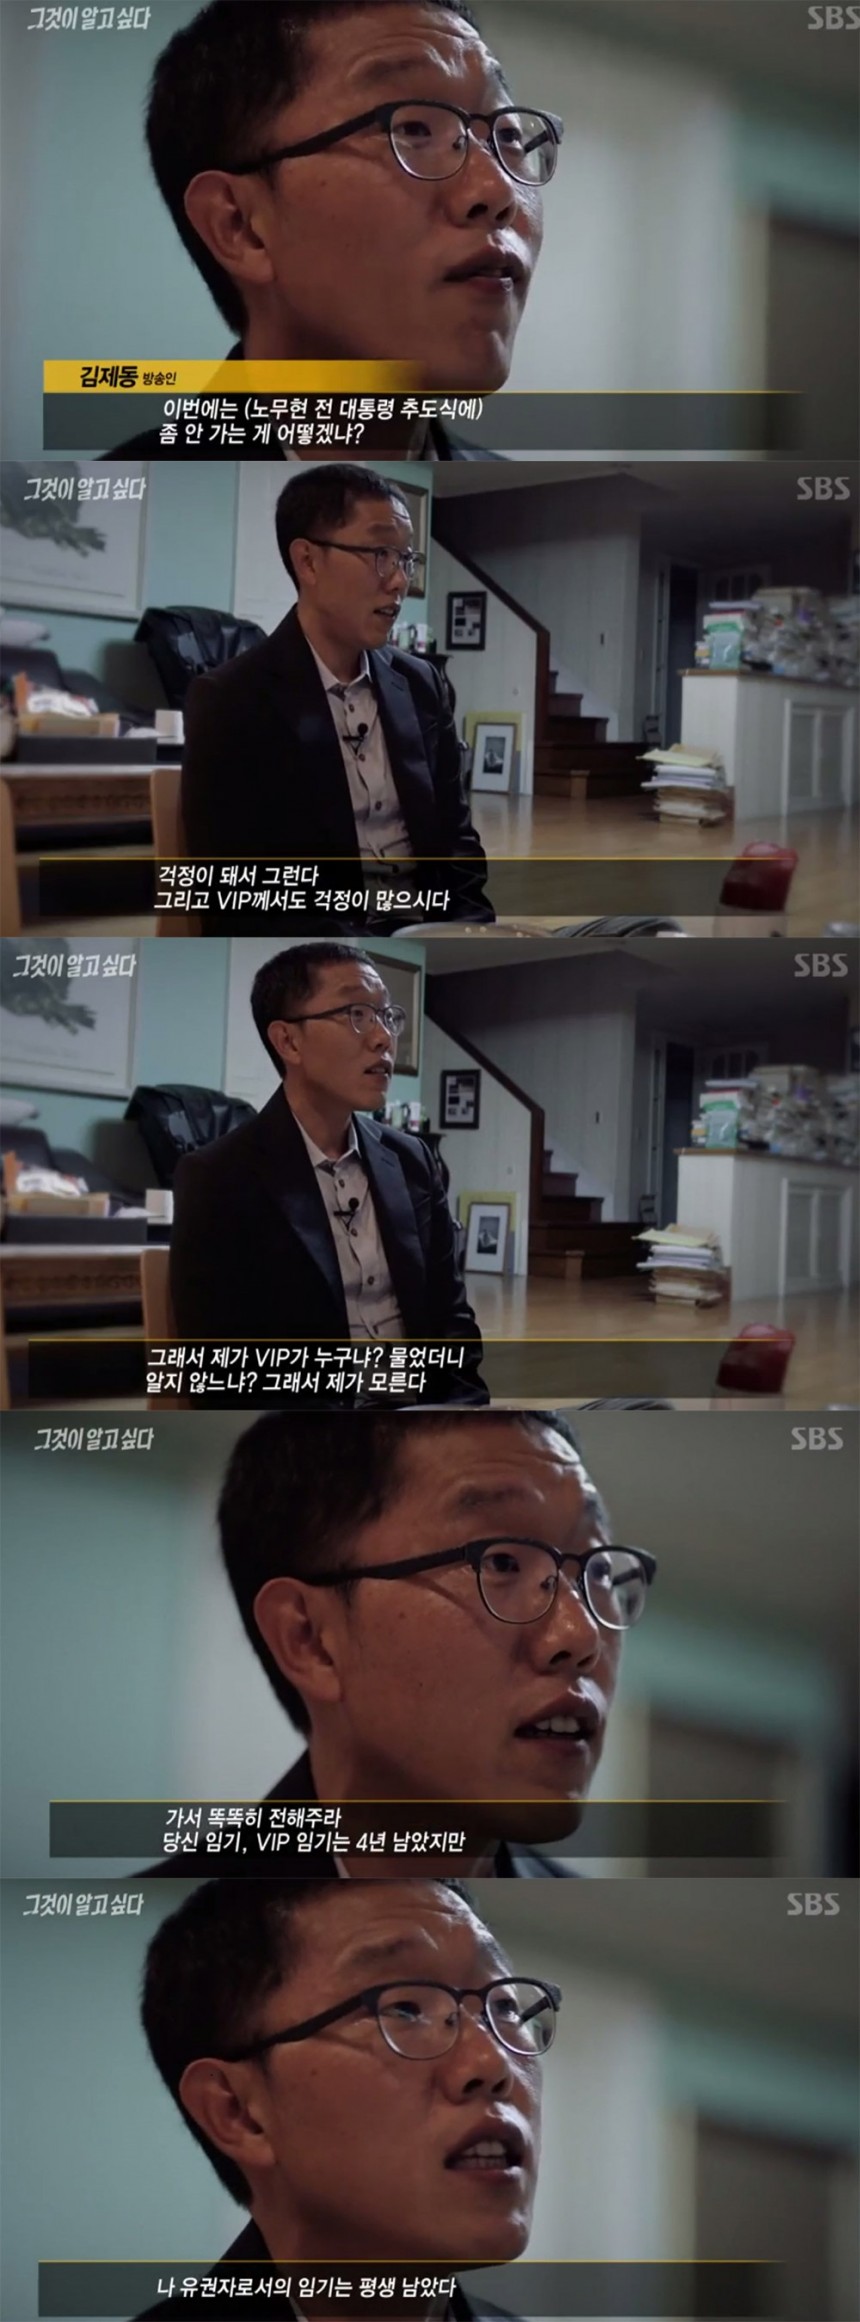 ‘그것이 알고 싶다’ 김제동이  / SBS ‘그것이 알고 싶다’ 방송 캡처